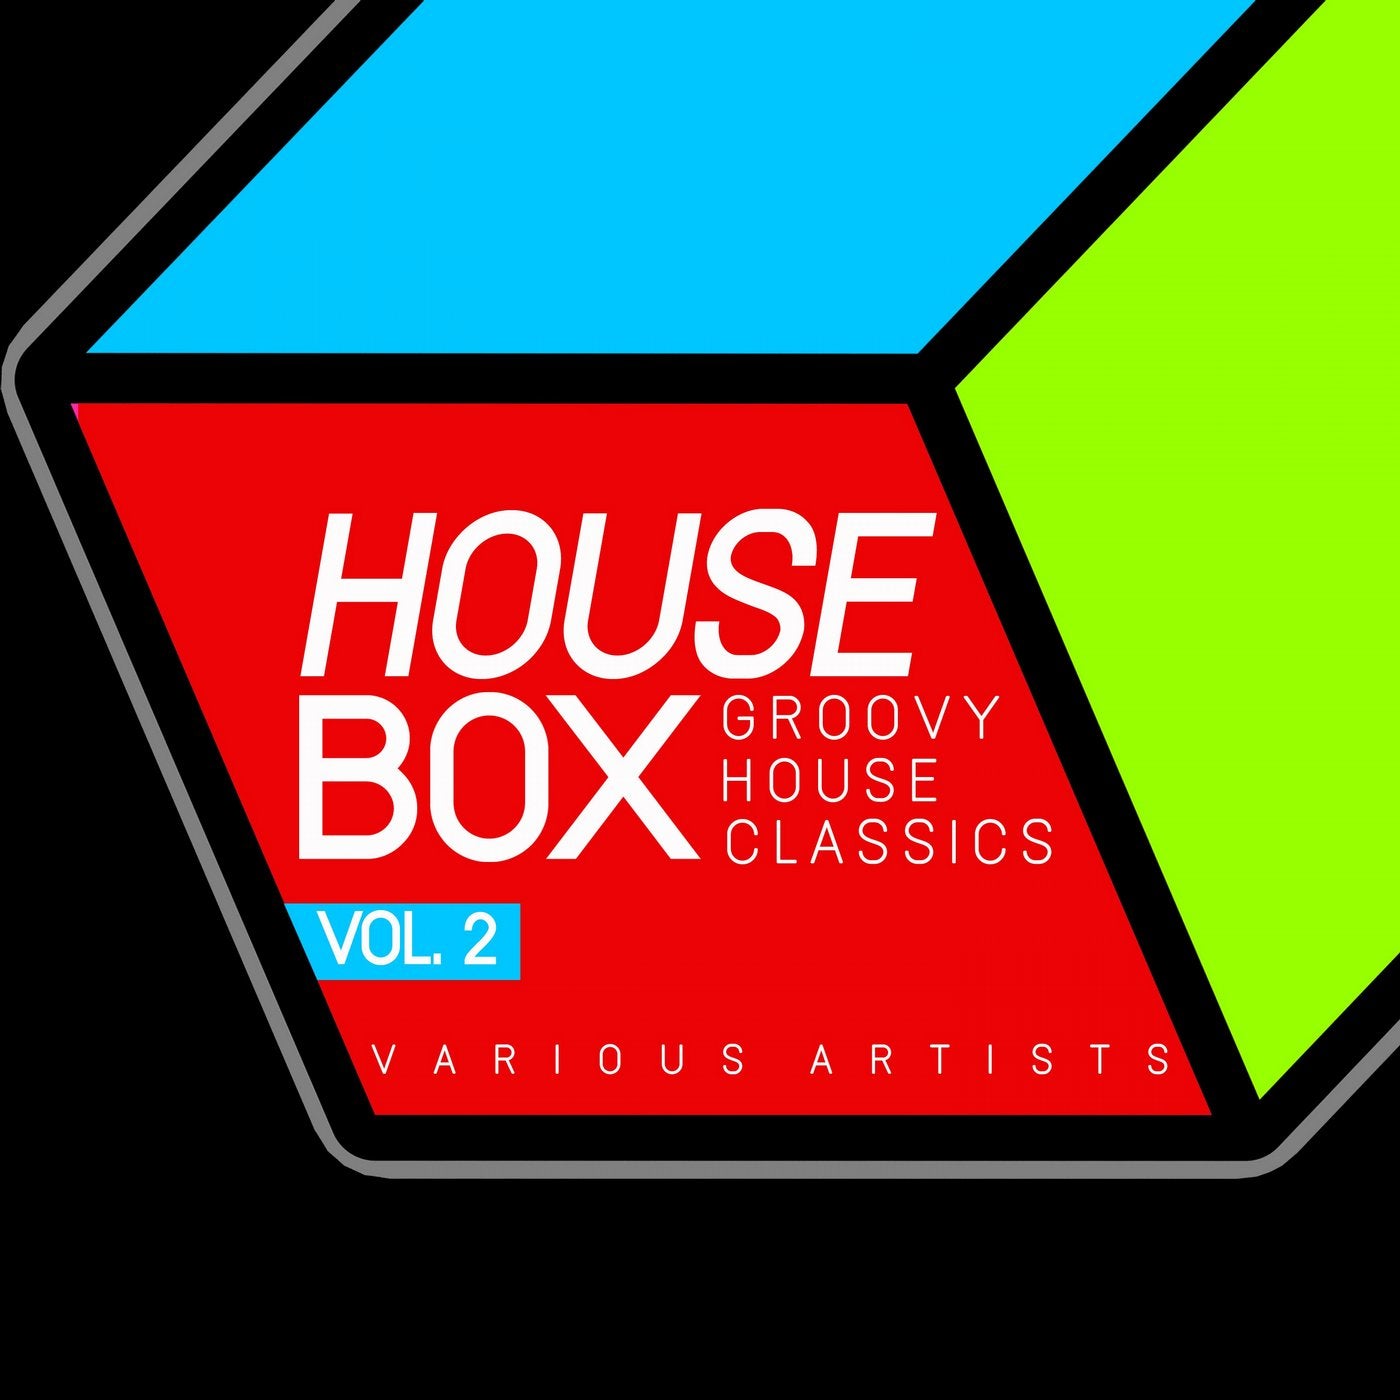 House Box (Groovy House Classics), Vol. 2